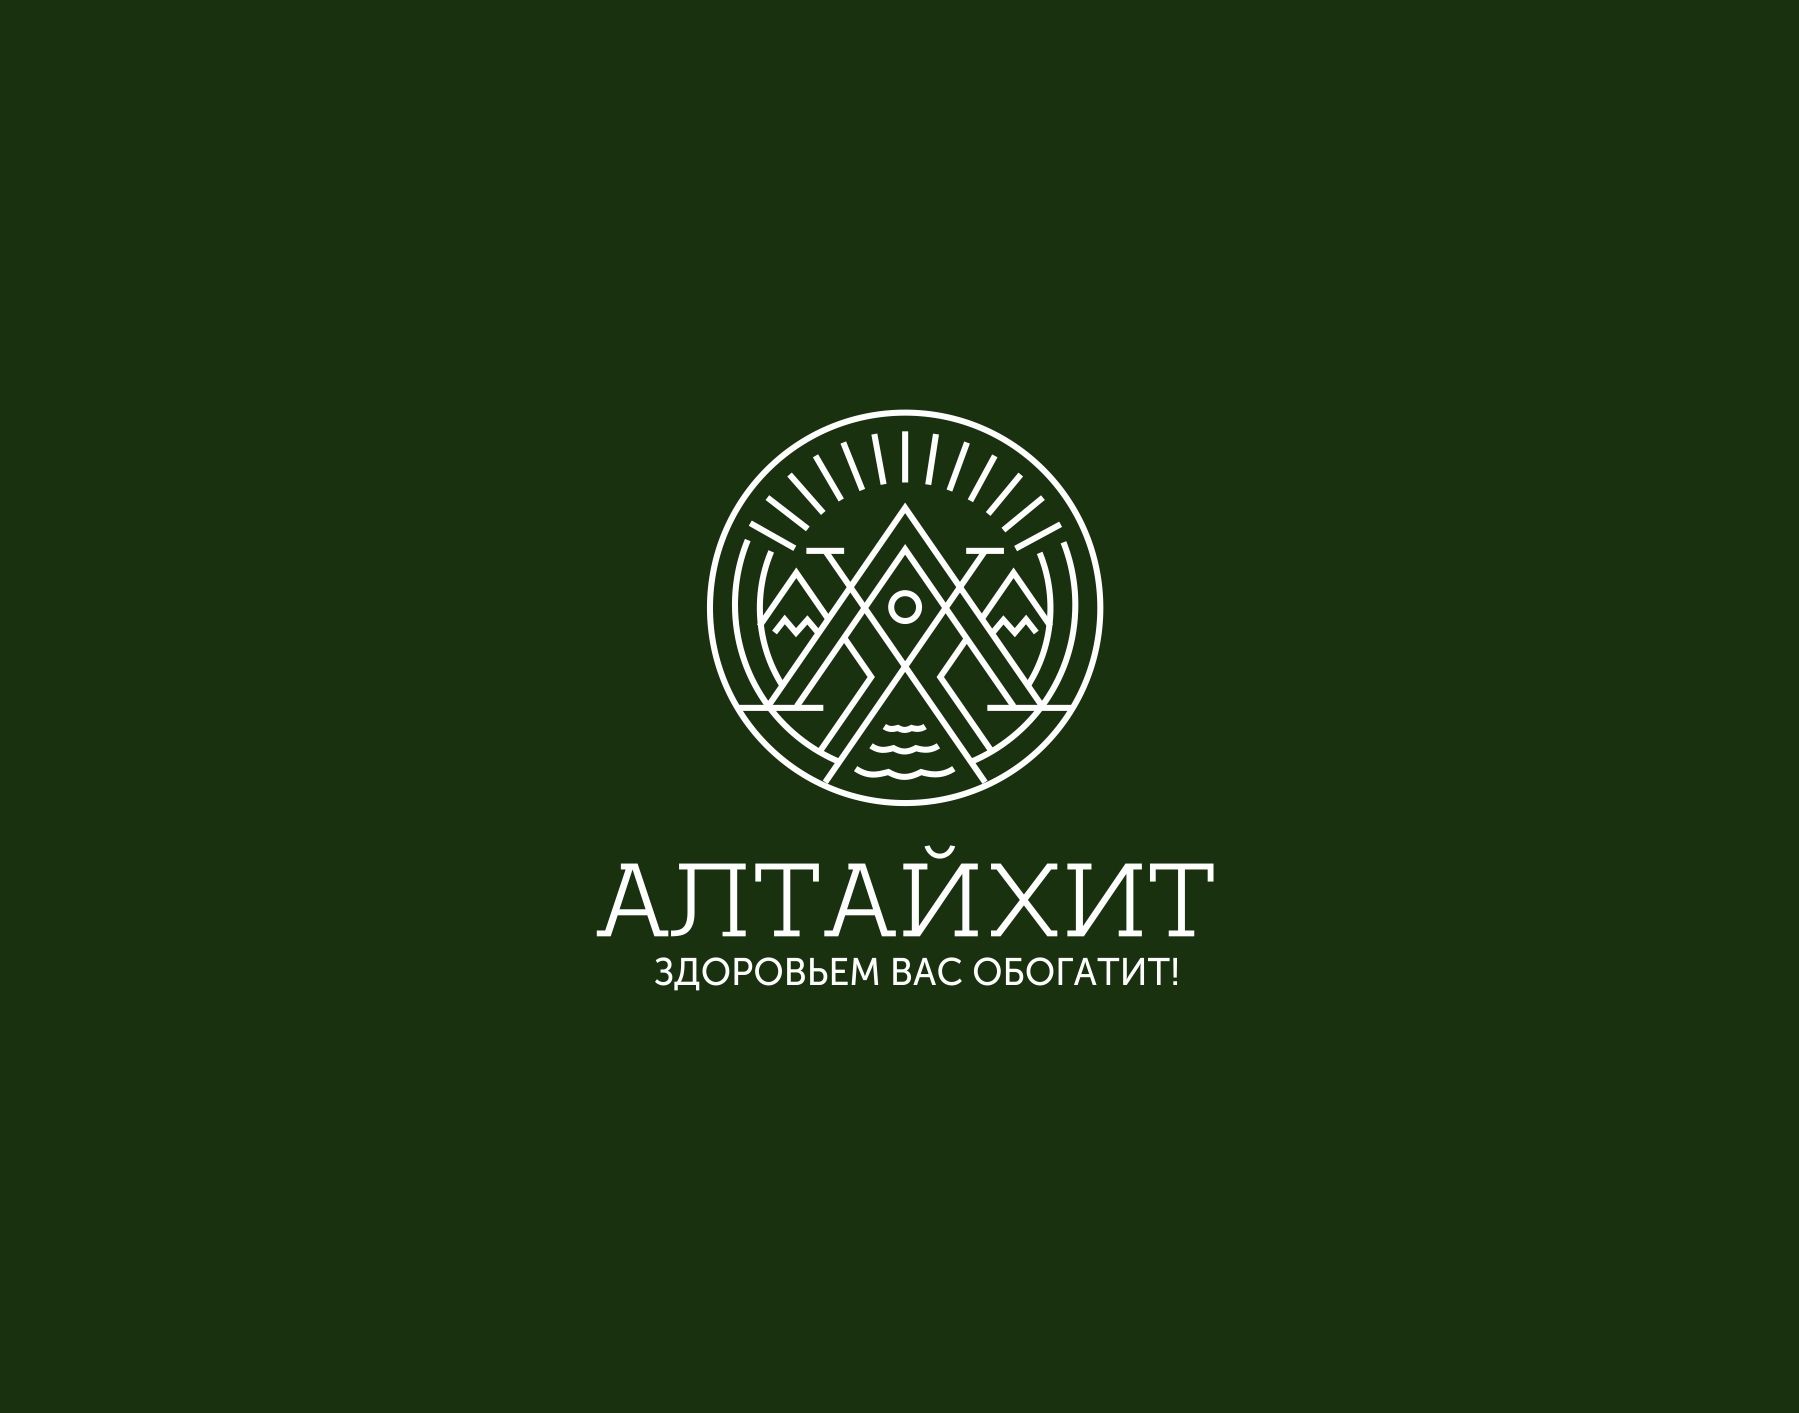 Логотип для АлтайХит - натуральная целебная продукция Алтая. - дизайнер kras-sky